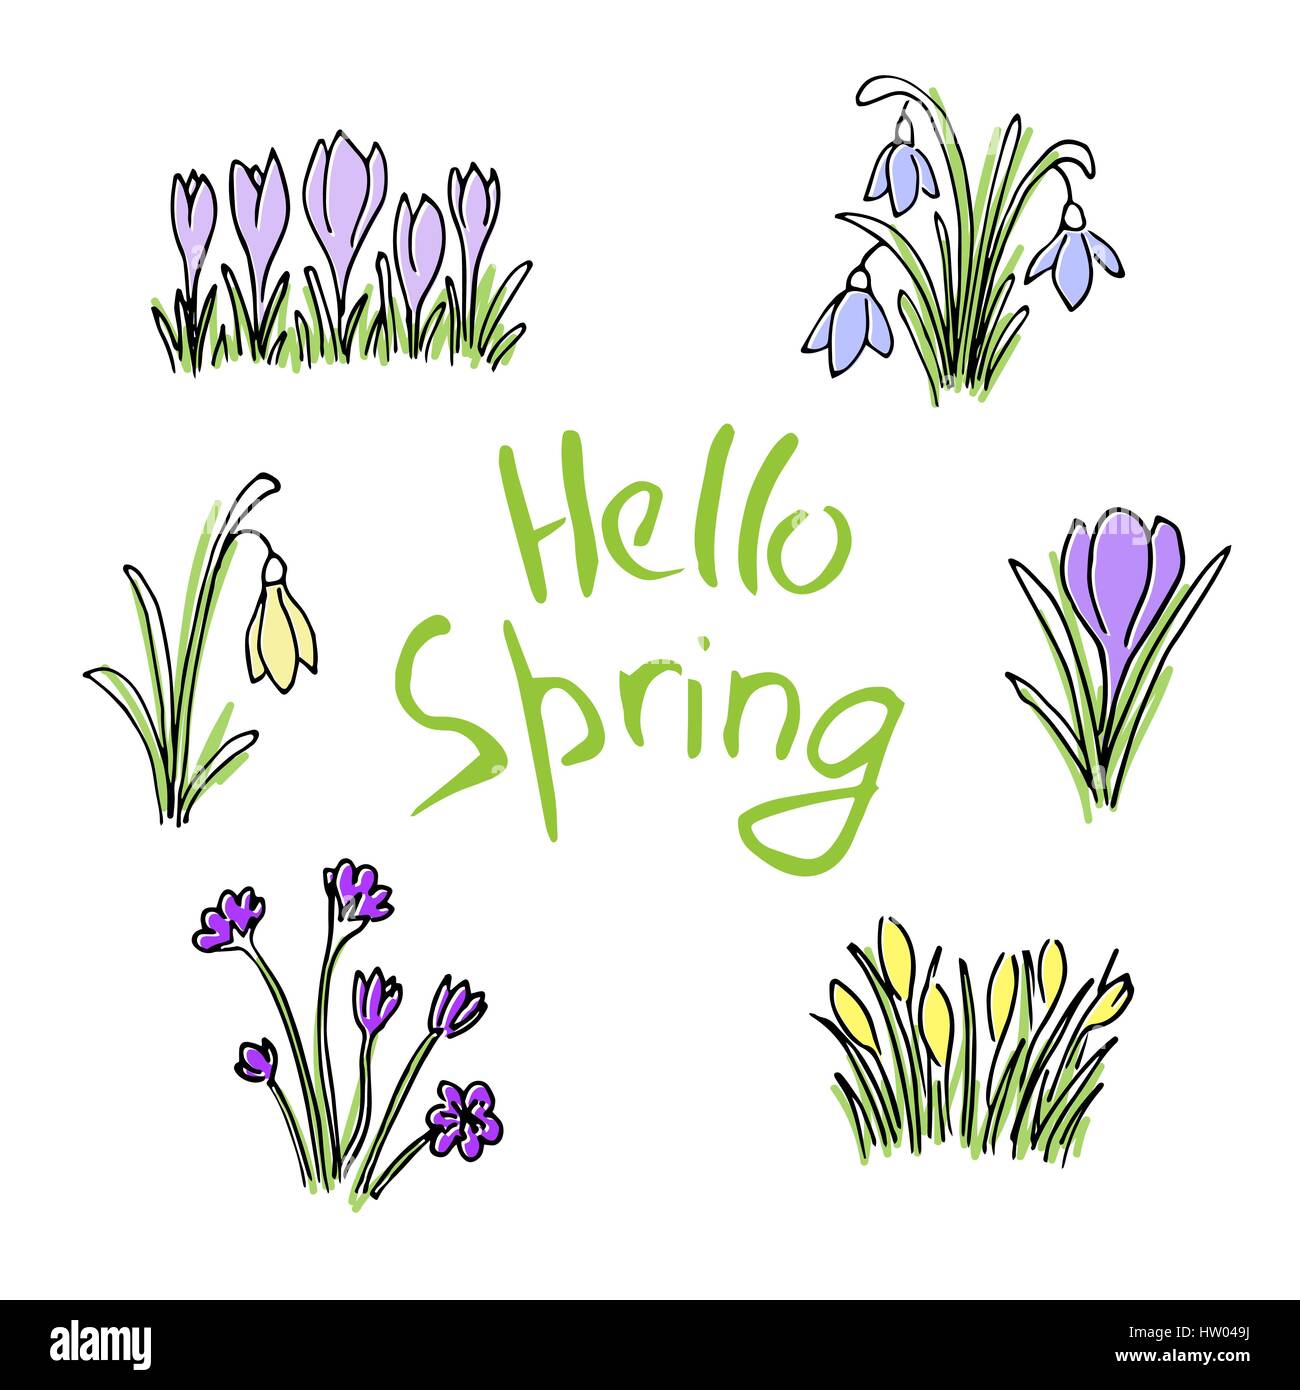 Hallo Frühling farbige Skizze festgelegt. Erste Blüten und Schriftzug Stock Vektor